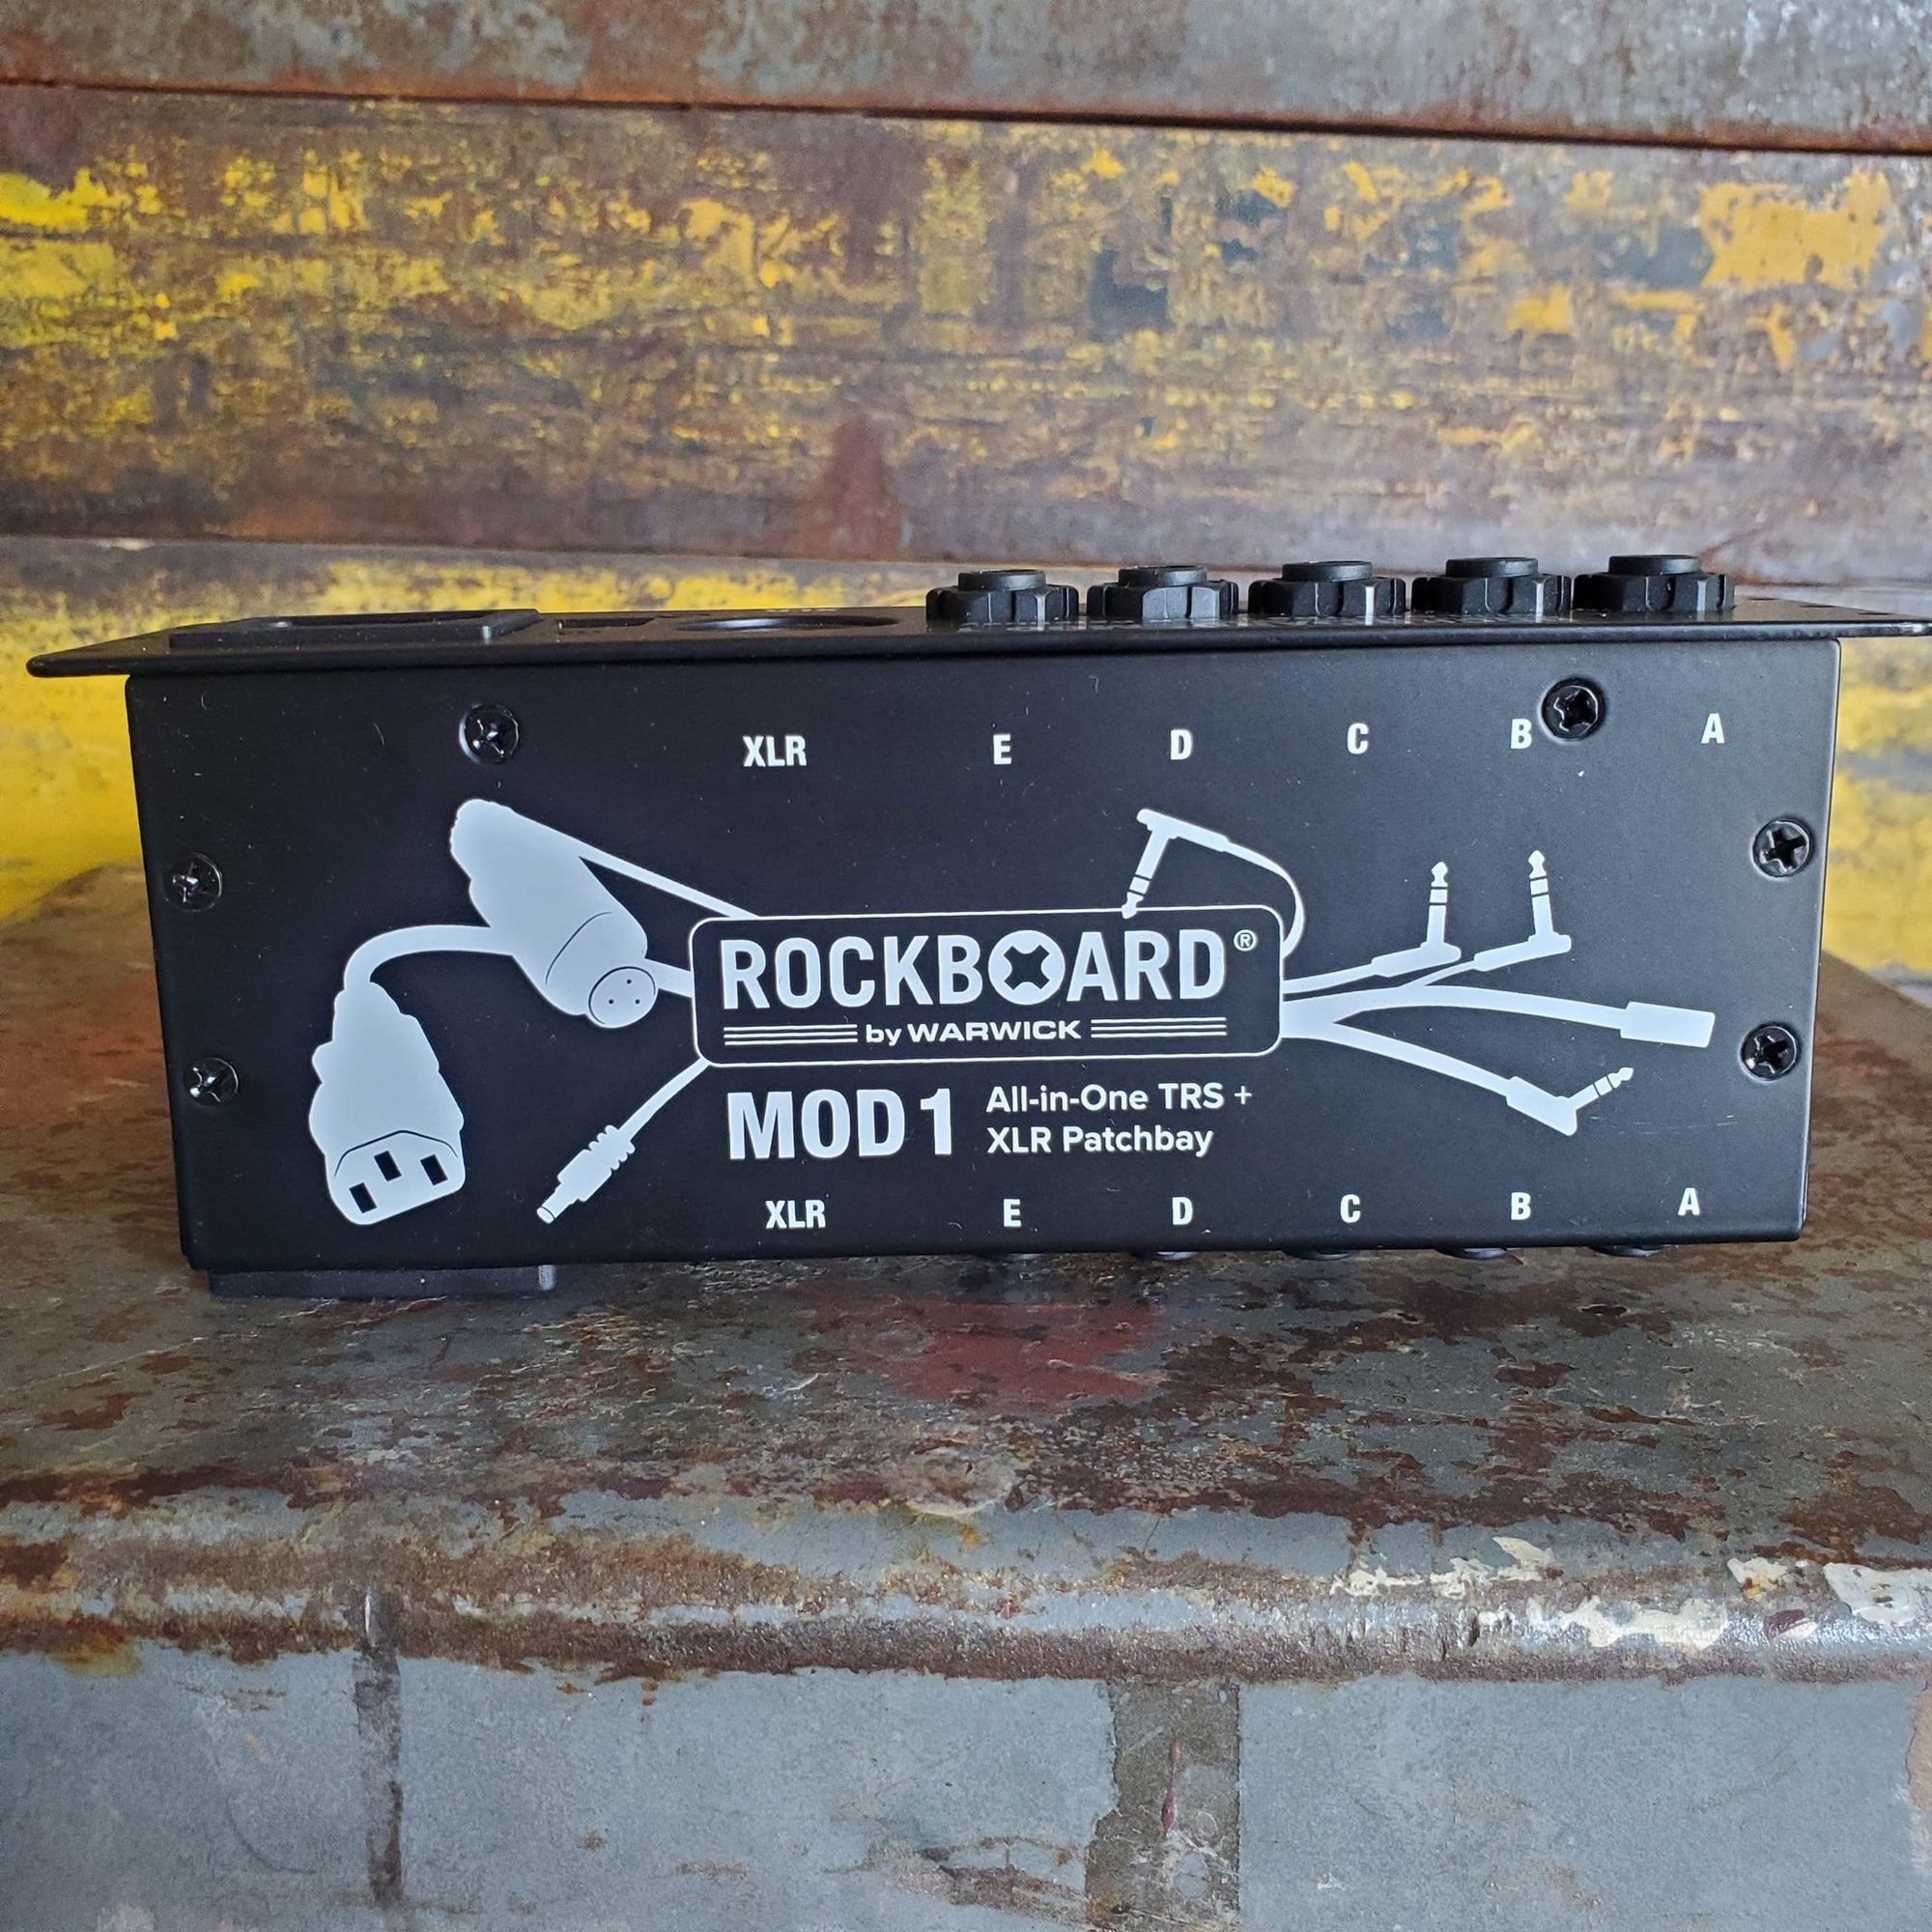 Rockboard MOD1, V2 - Series Patch Bay MOD 1 with XLR